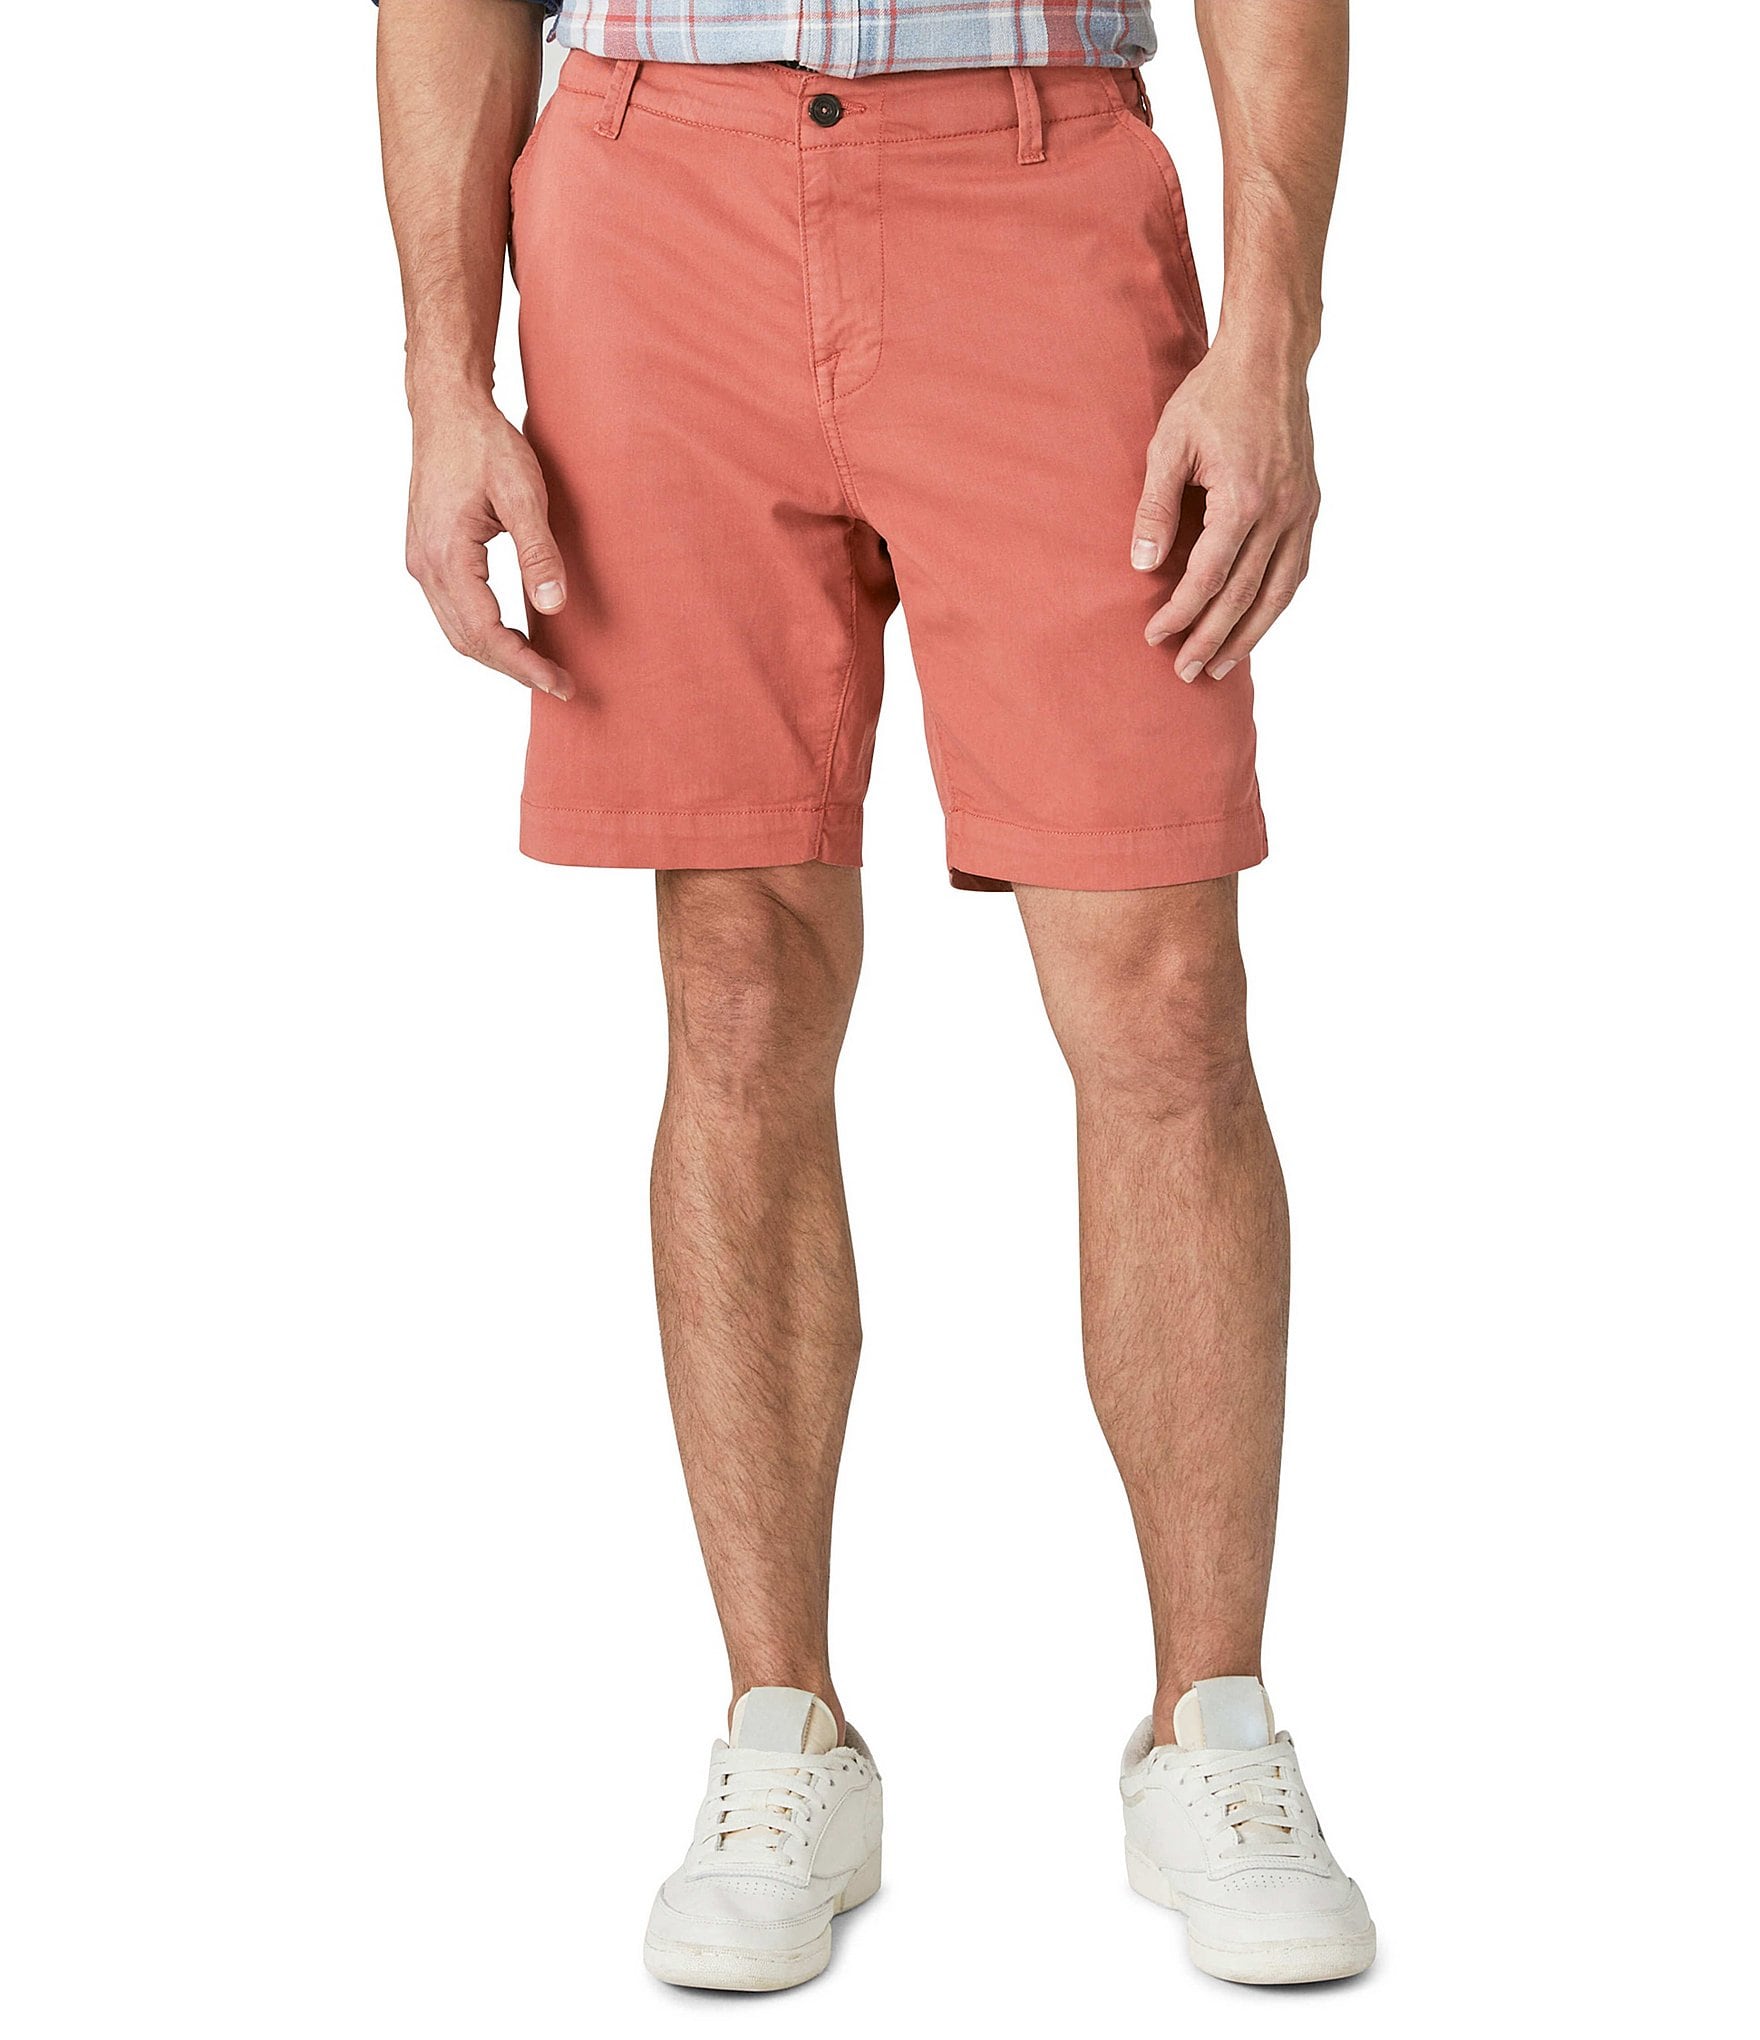 Lucky Brand Shorts Mens 34 Tan Linen Blend Chino Outdoor Flat